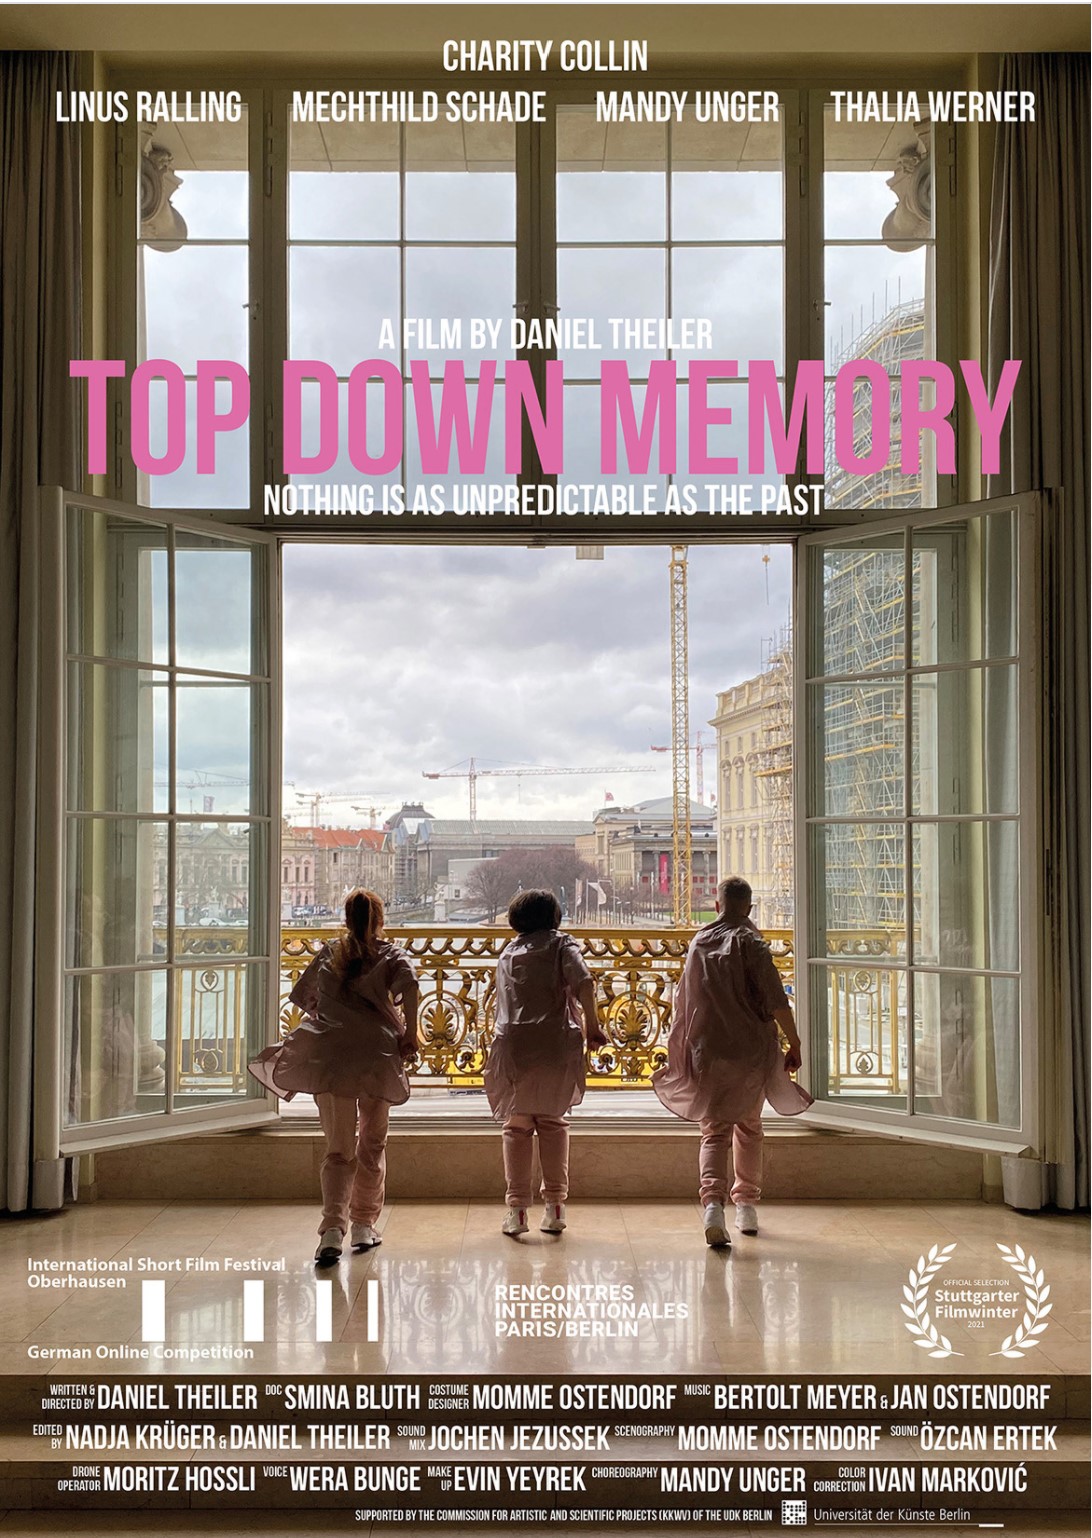 film poster of "Topdown Memory"